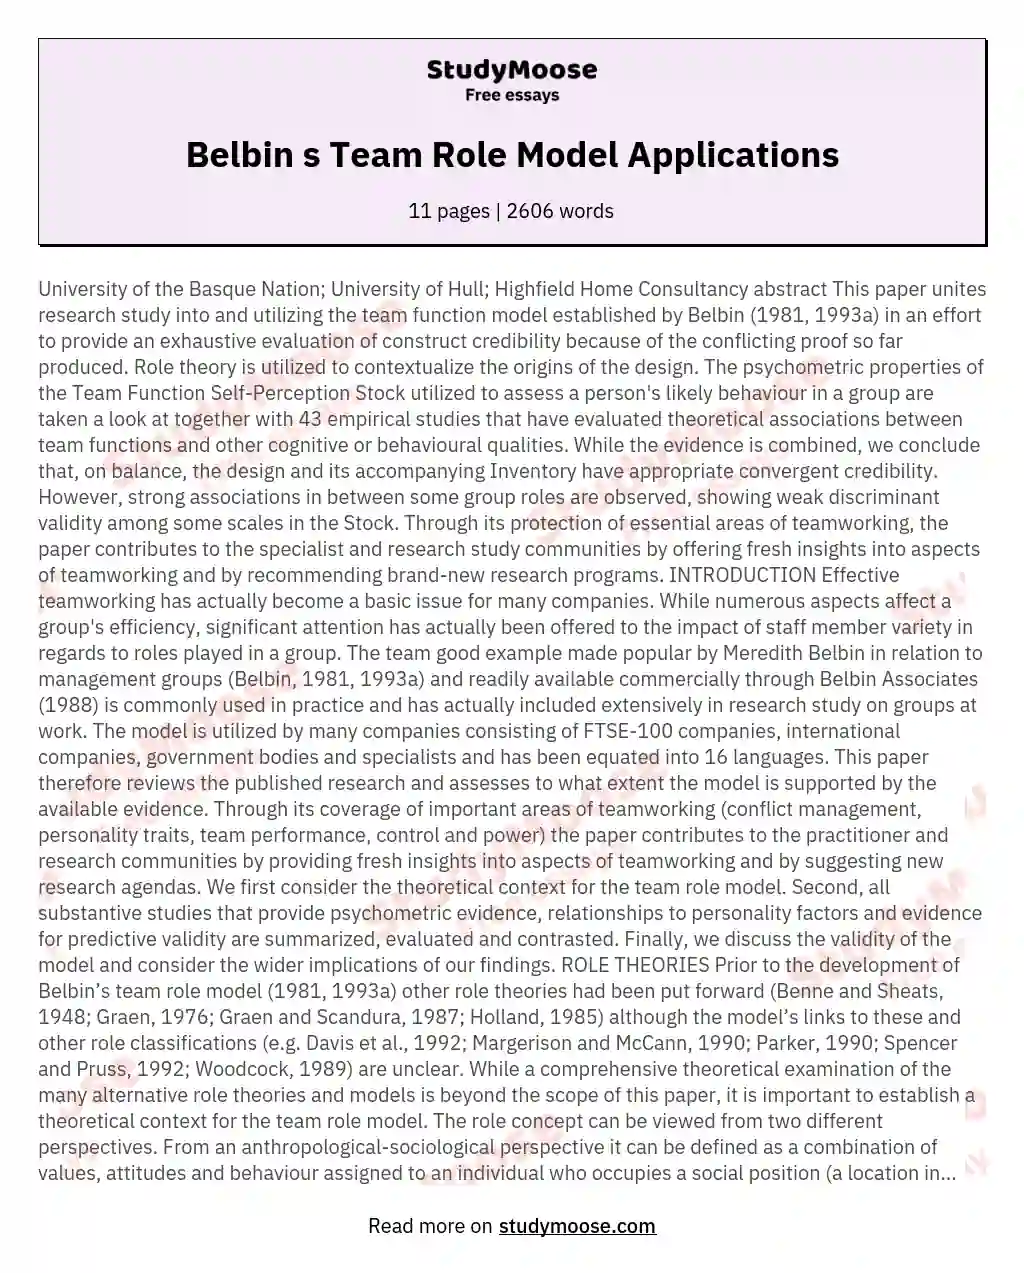 Belbin s Team Role Model Applications essay